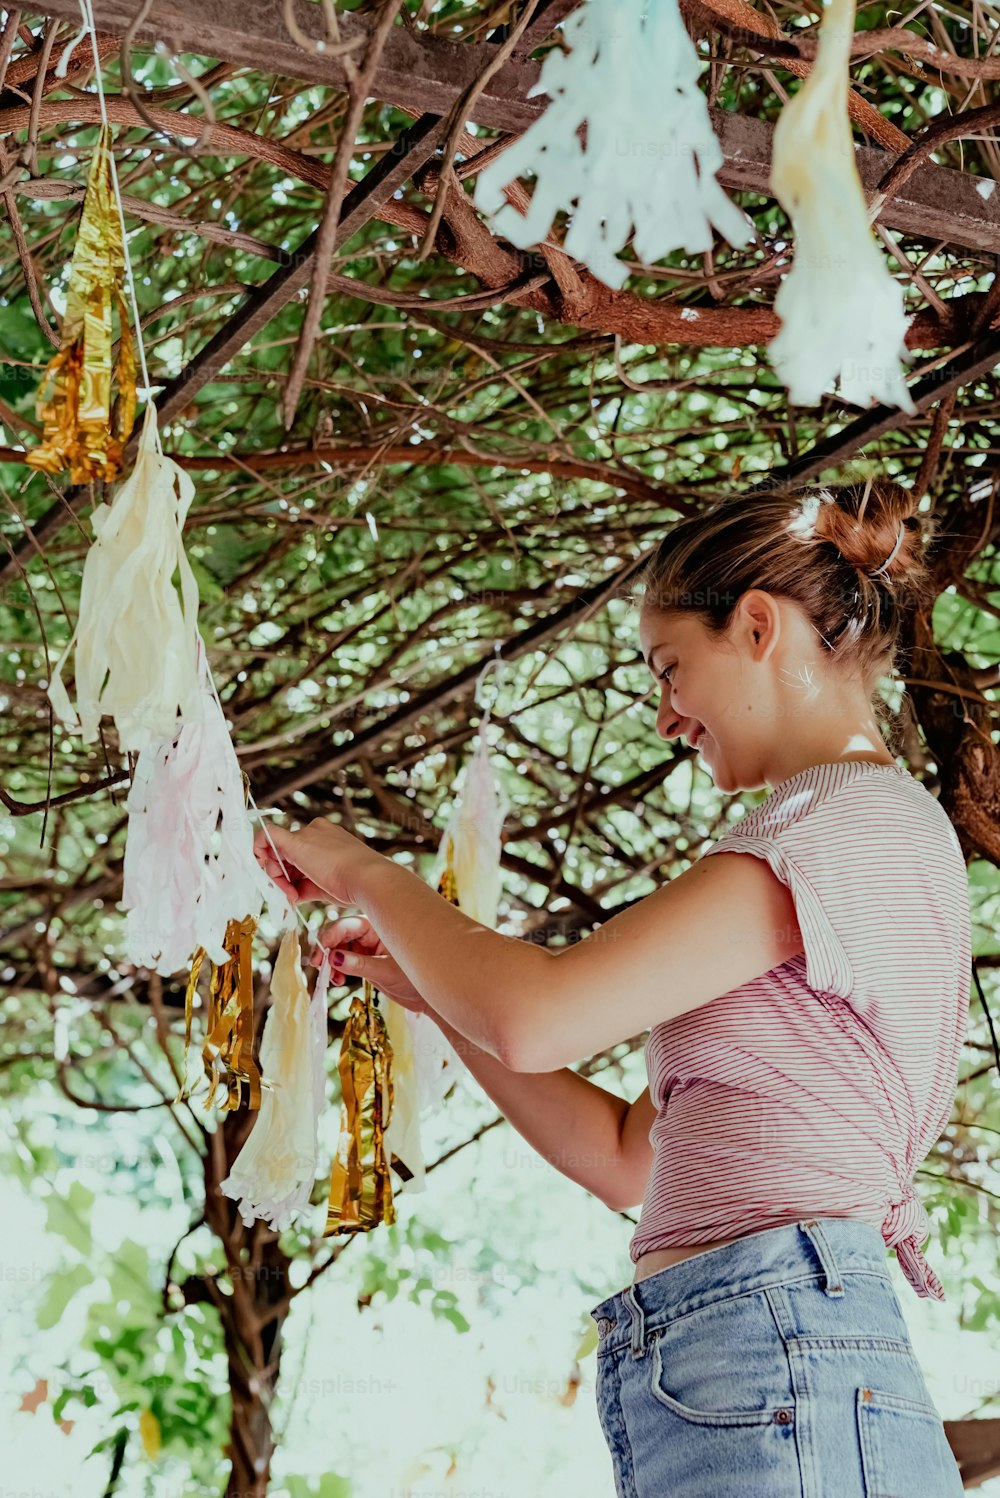 Une jeune fille tient une ficelle suspendue à un arbre